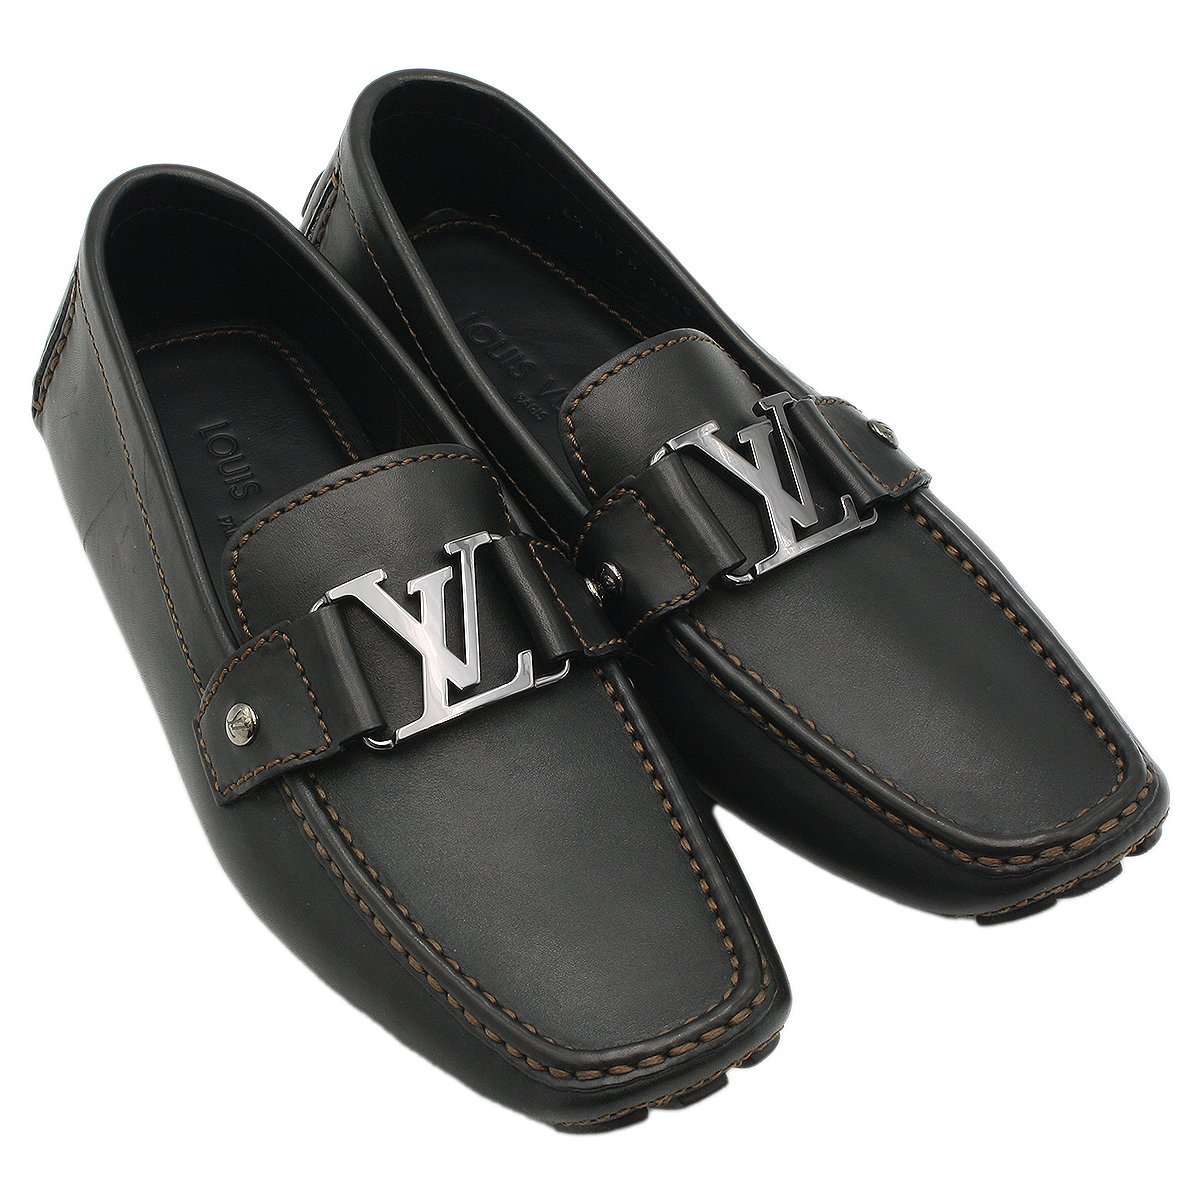 Yahoo!オークション -「ルイヴィトン 靴 メンズ 6」の落札相場・落札価格